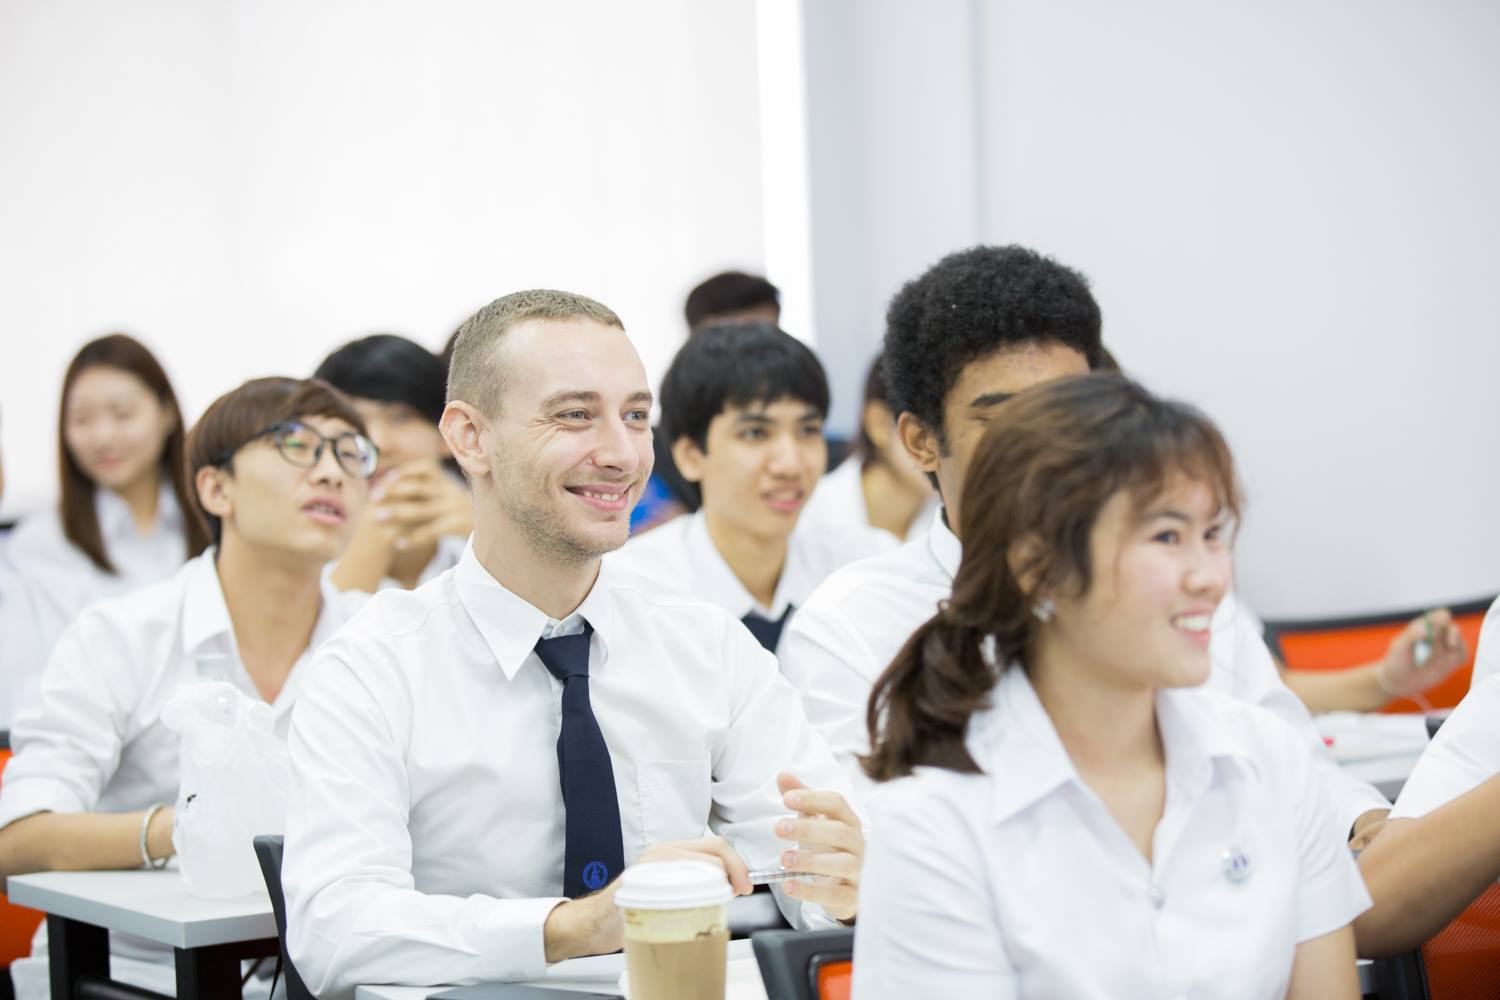 ‘วิทยาลัยนานาชาติ’ DPU พร้อมก้าวสู่นานาประเทศ ตั้งเป้า Education and Travel ดึงนักศึกษาจากนานาชาติเข้าเรียนไทย รองรับการเปลี่ยนแปลงเศรษฐกิจโลก ตีตลาด South Asia